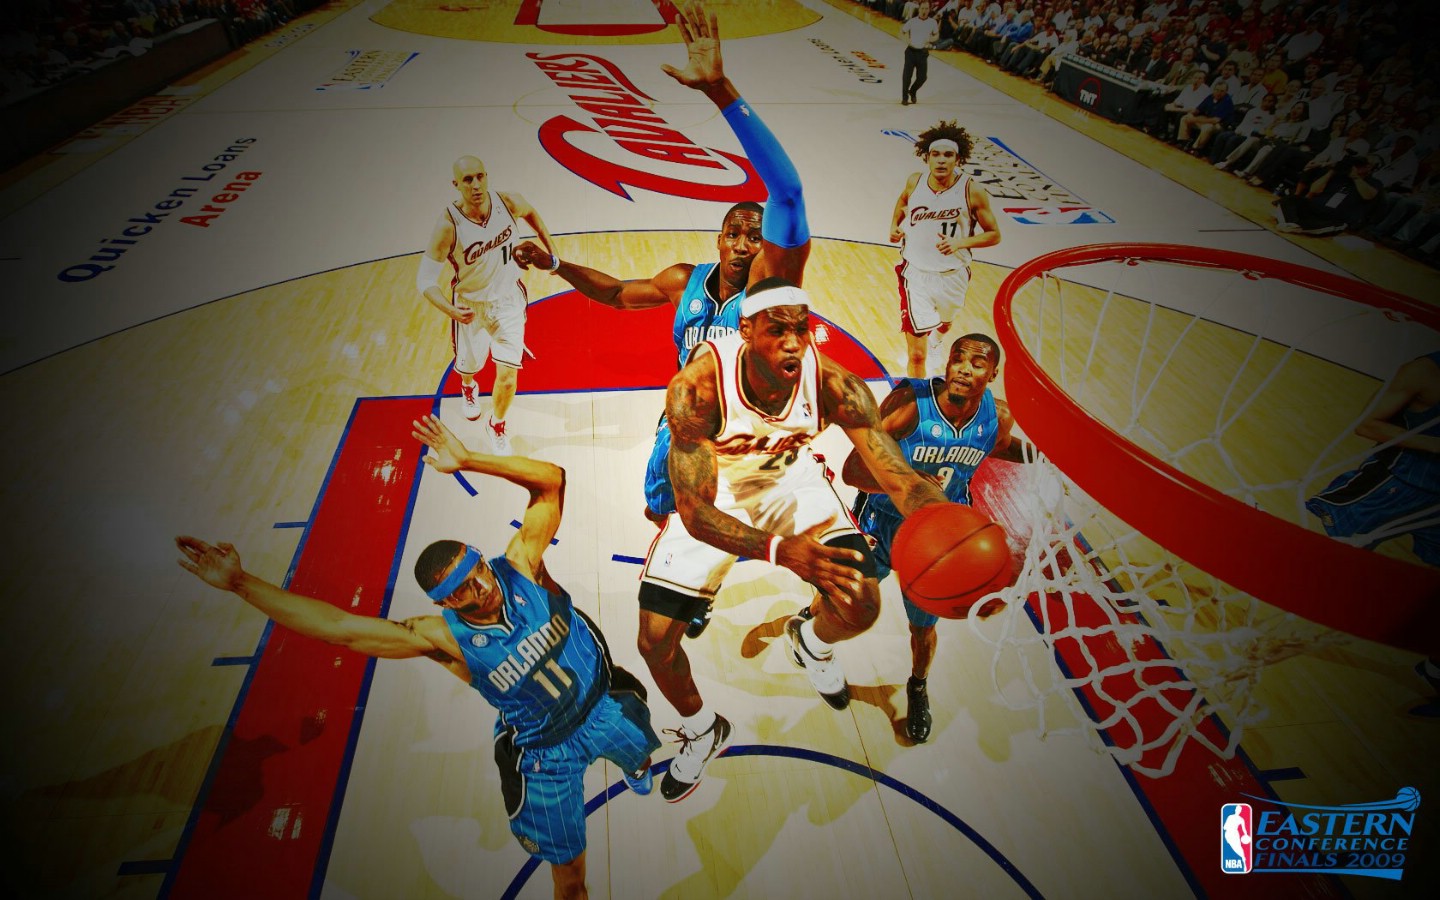 壁纸1440×900LeBron James MVP图片壁纸壁纸,NBA骑士队 Cavaliers 2009季后赛壁纸壁纸图片-体育壁纸-体育 ...